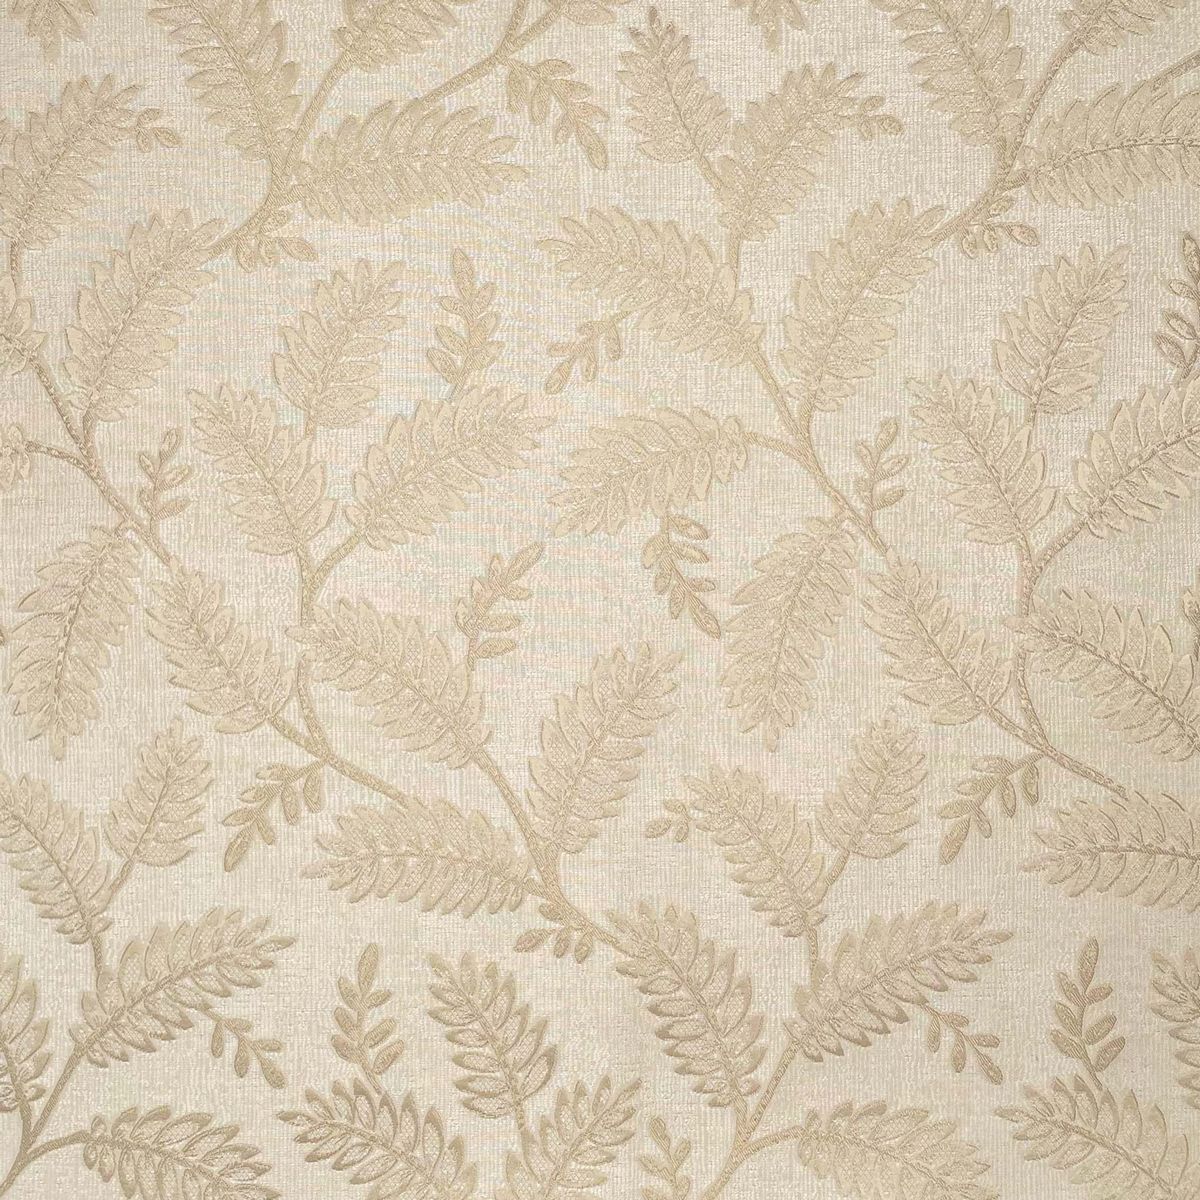 Winterbourne Jasmine Fabric by Chatham Glyn